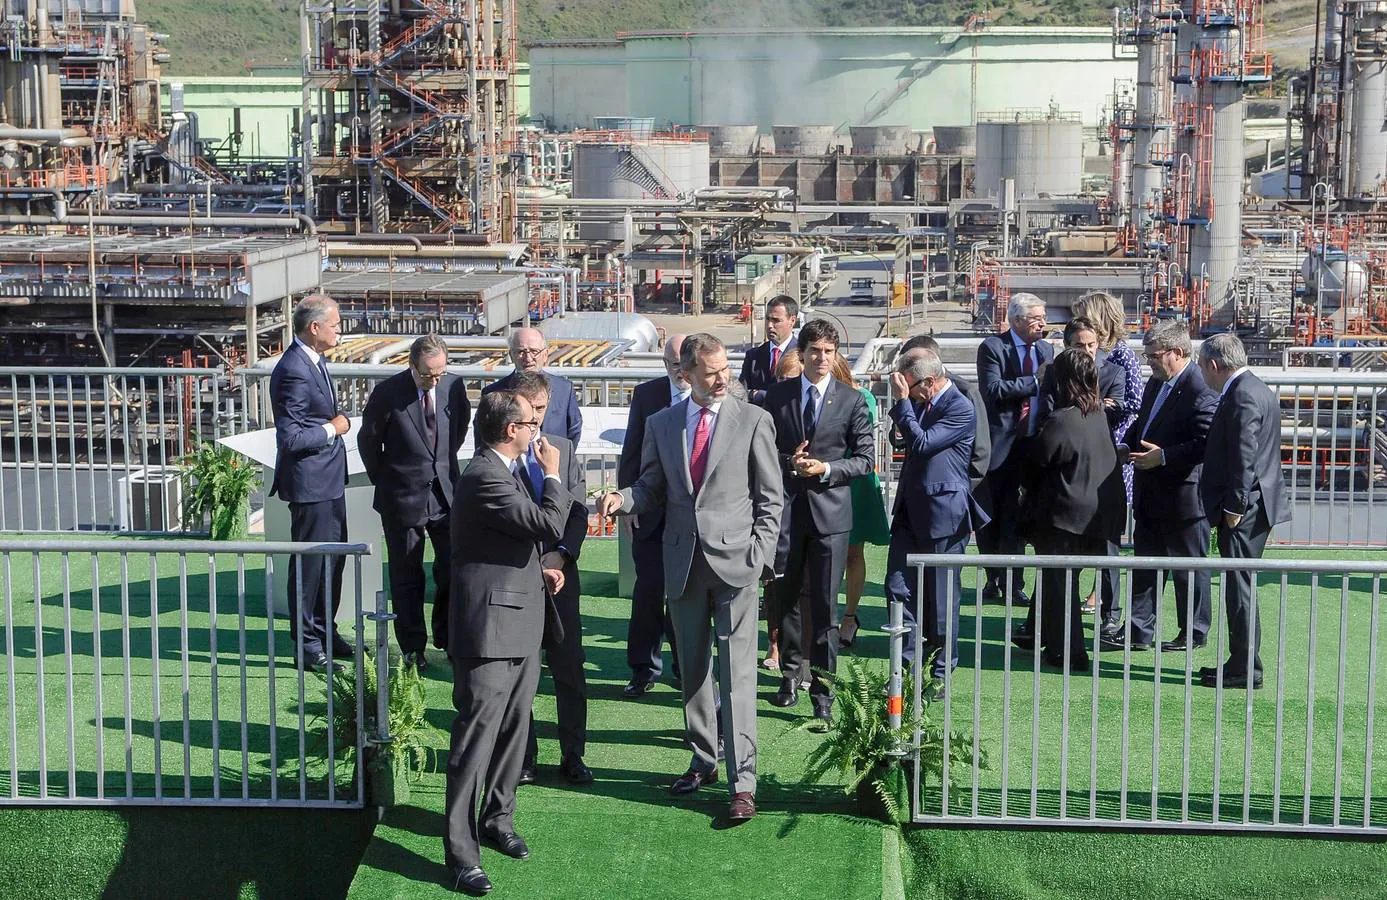 El Rey accede a las instalaciones de la refinería. Tras él, camina el diputado general Unai Rementería. También ha estado el presidente de Repsol, Antonio Brufau (arriba tercero por la izquierda).